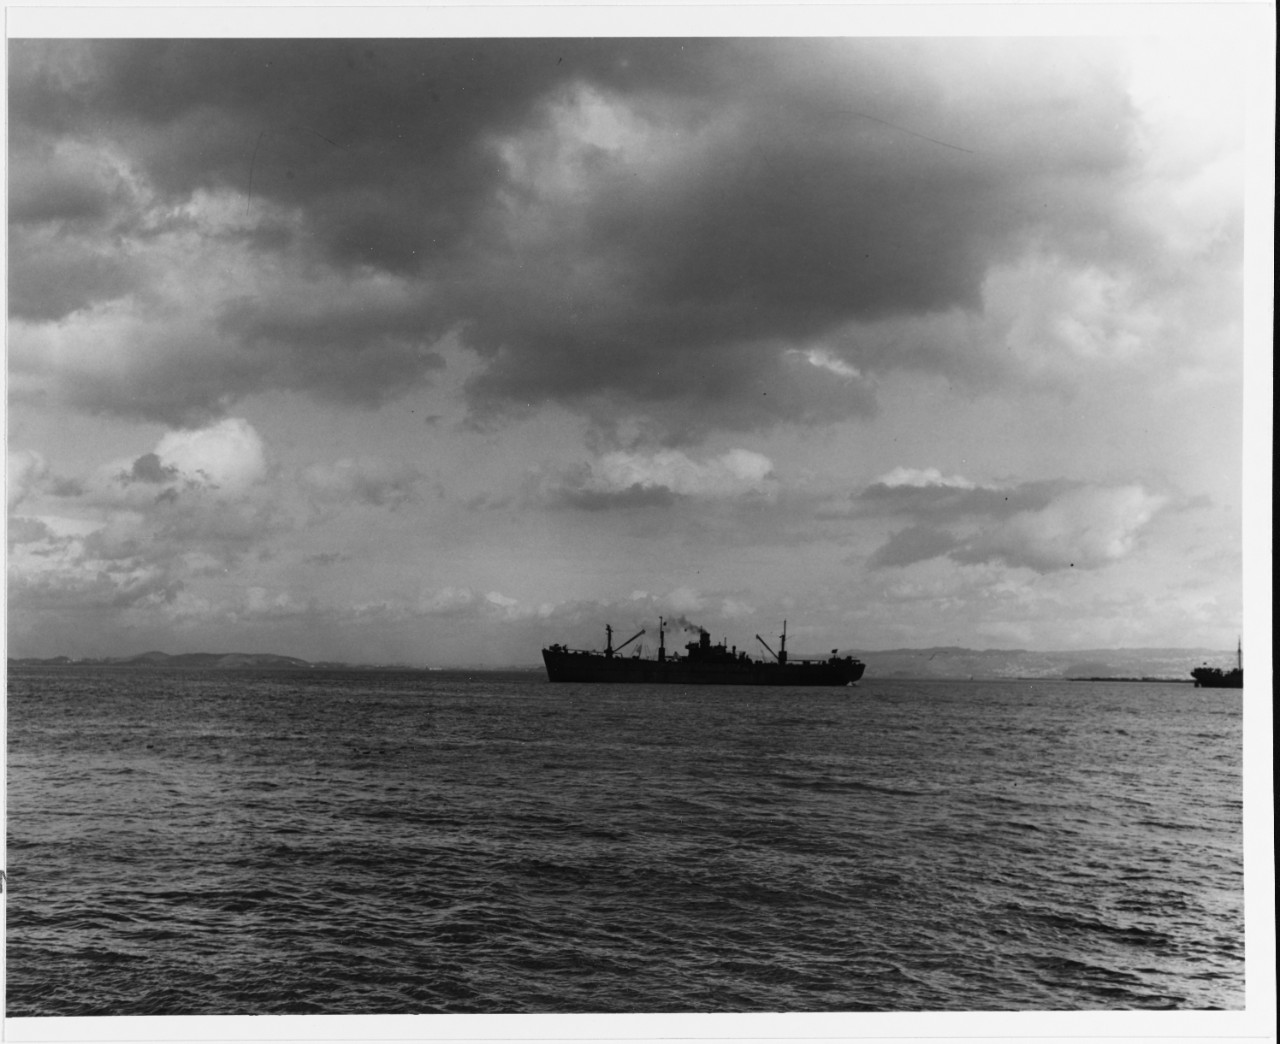 S.S. MAIKOP (U.S.S.R. Merchant Tanker, 1943-1969)